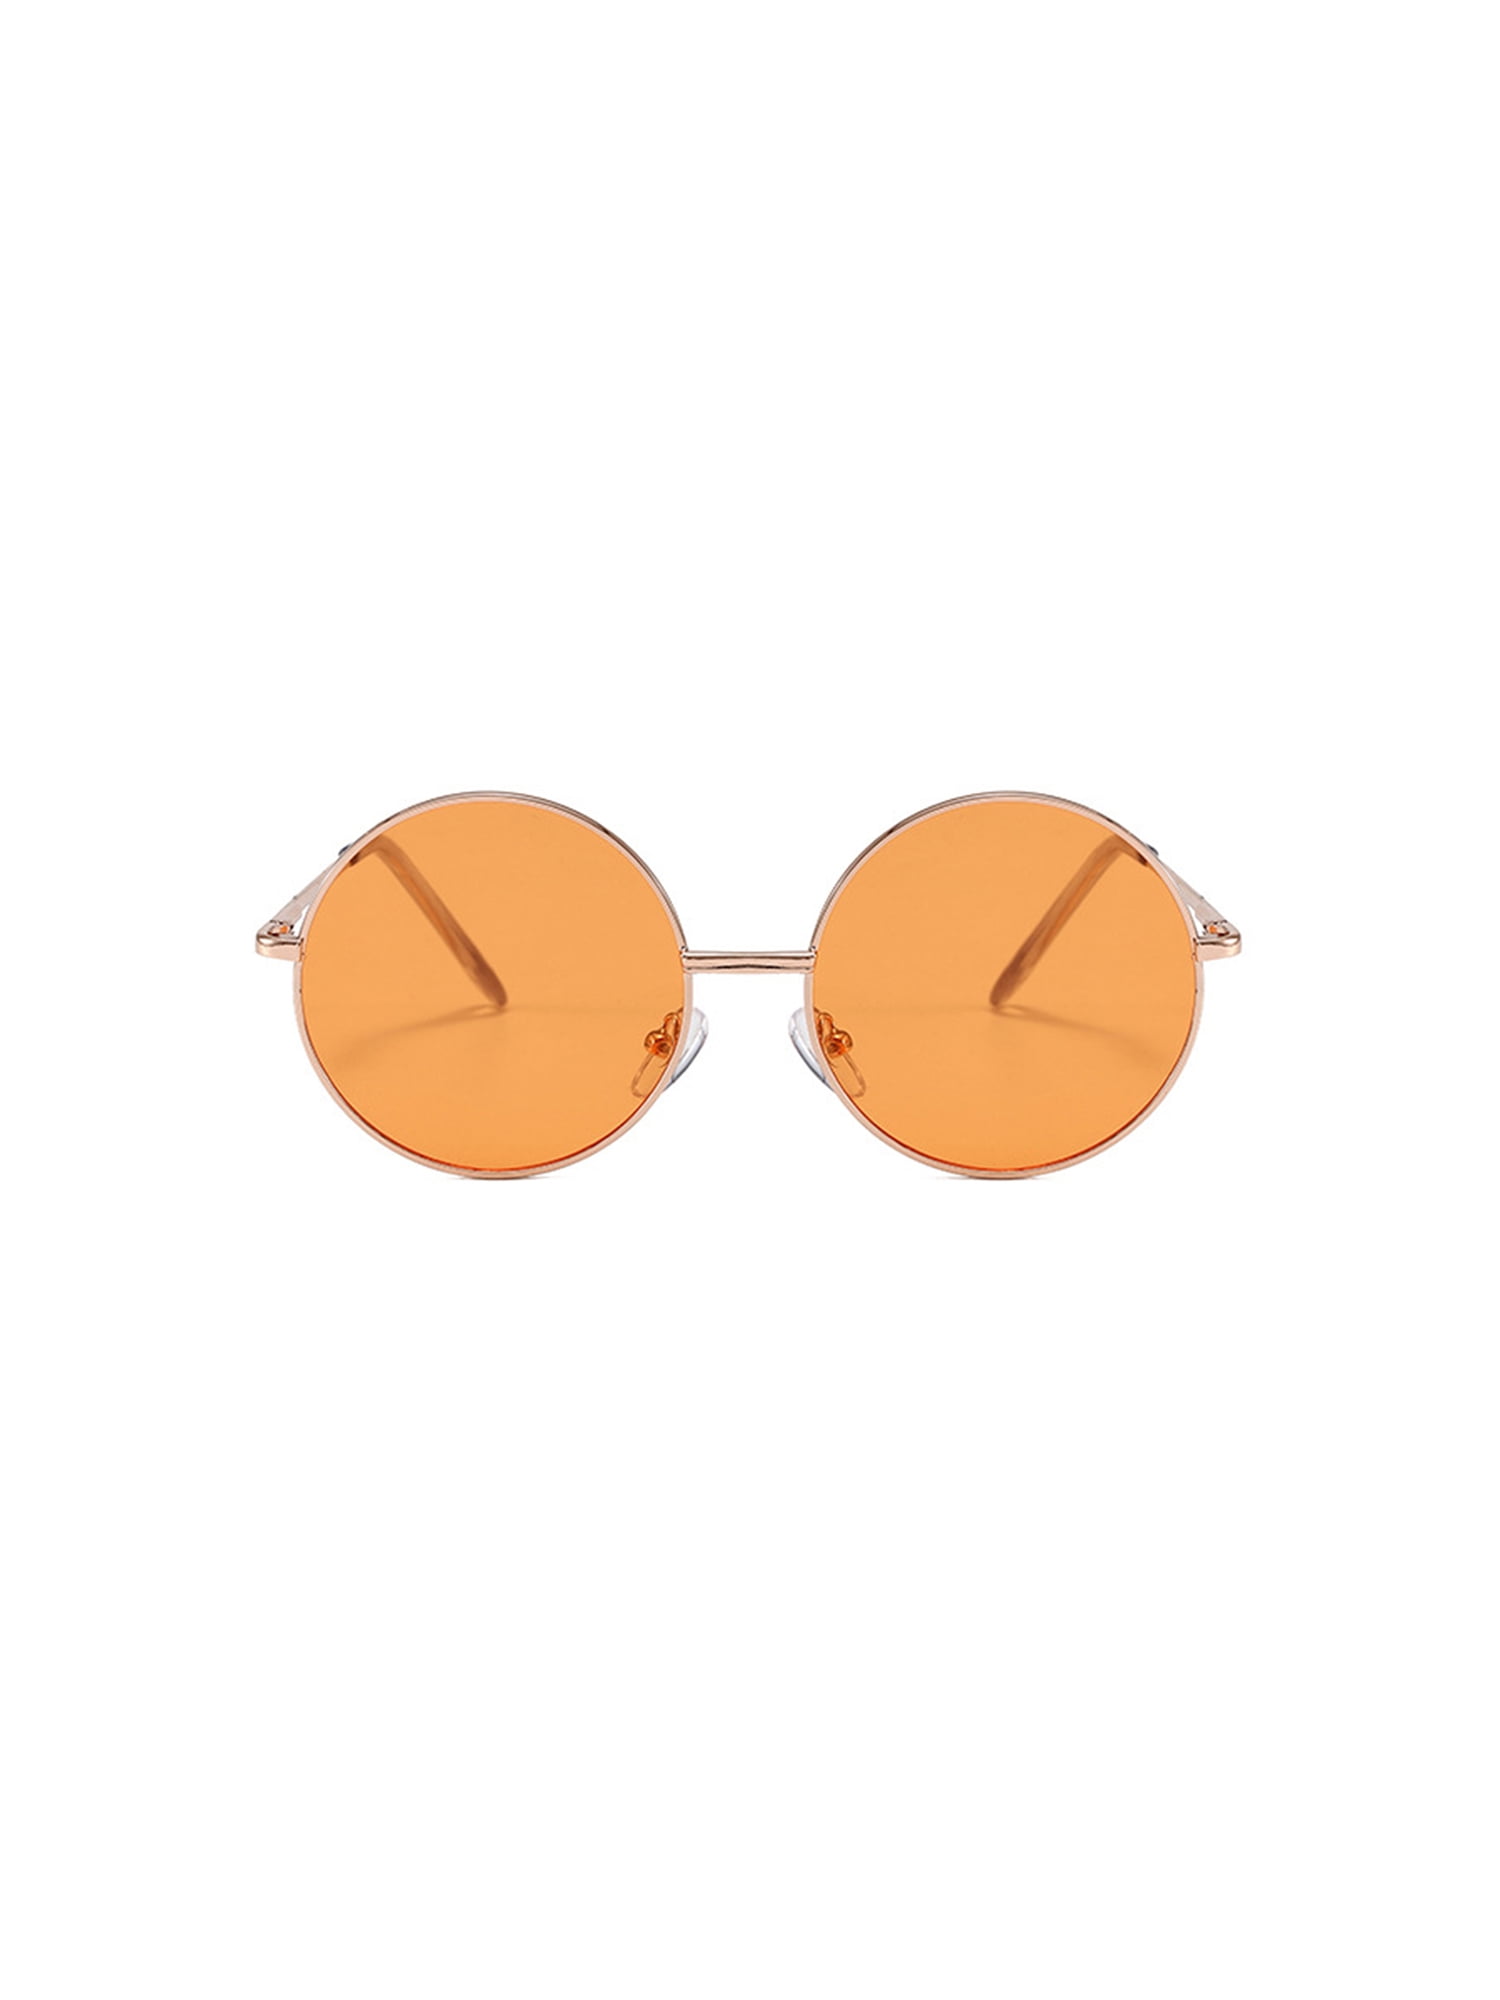 Amazon.com: Orange Blue Light Blocking Glasses for Women & Men - Reading  Sleep & Migraine Glasses - Engineered 99.5% Amber Blue Light Glasses for  Computer Eye Strain Eye Fatigue - Blue Blockers